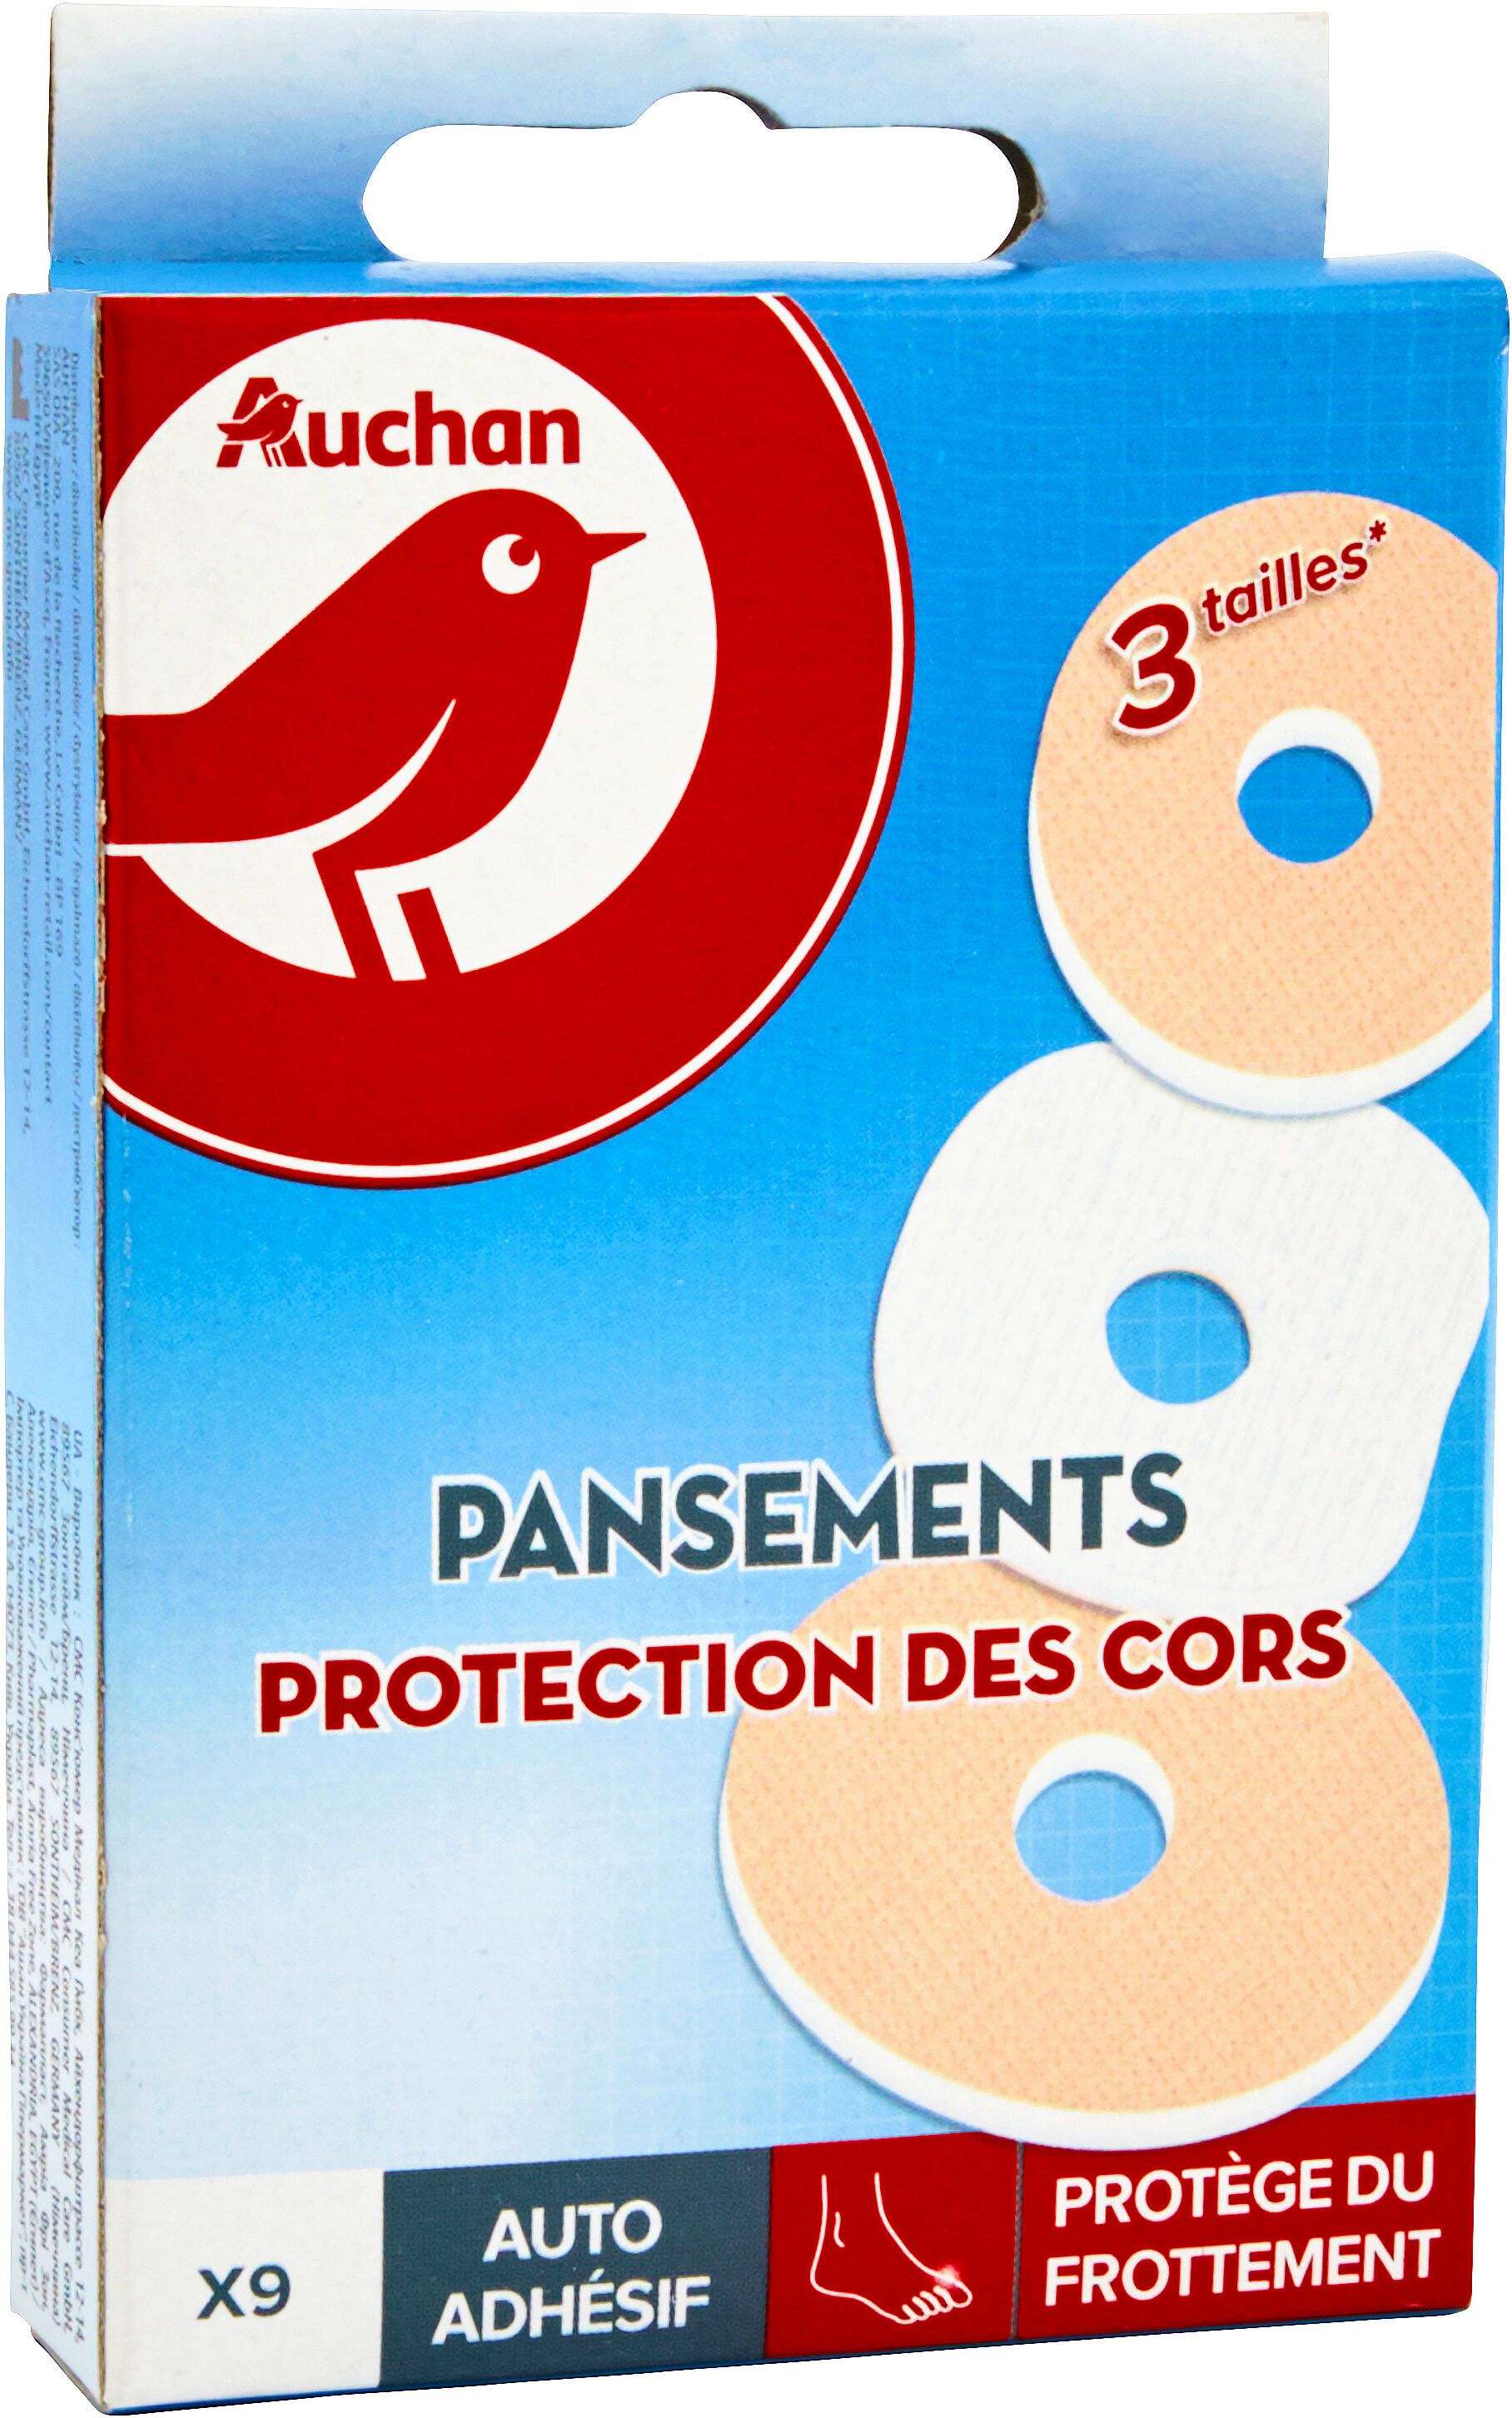 Pansements protection des cors x9 - Produit - fr